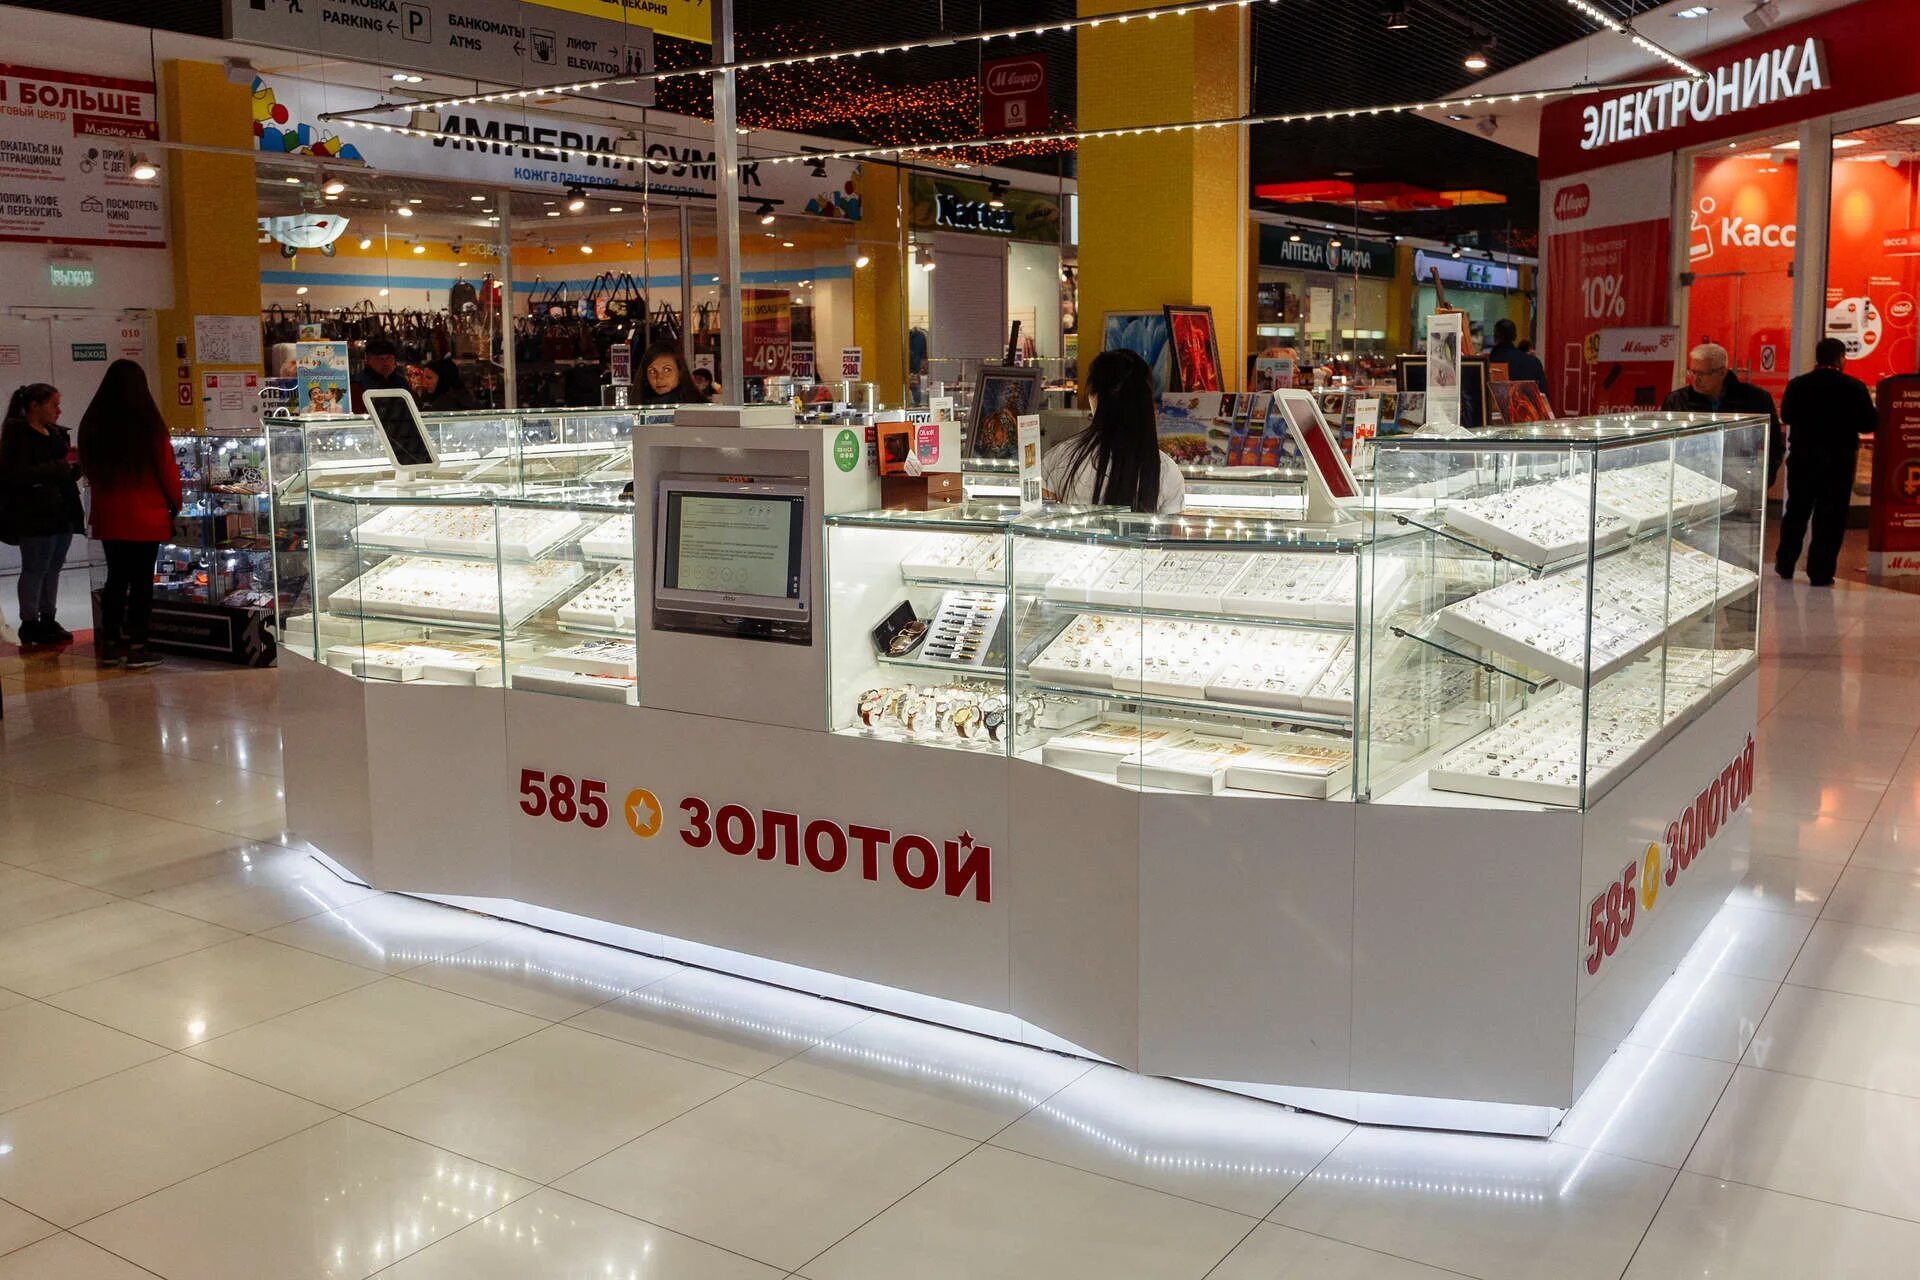 Ювелирный магазин 585. 585 Великий Новгород. Магазин золота. 585 Золотой фото магазина.